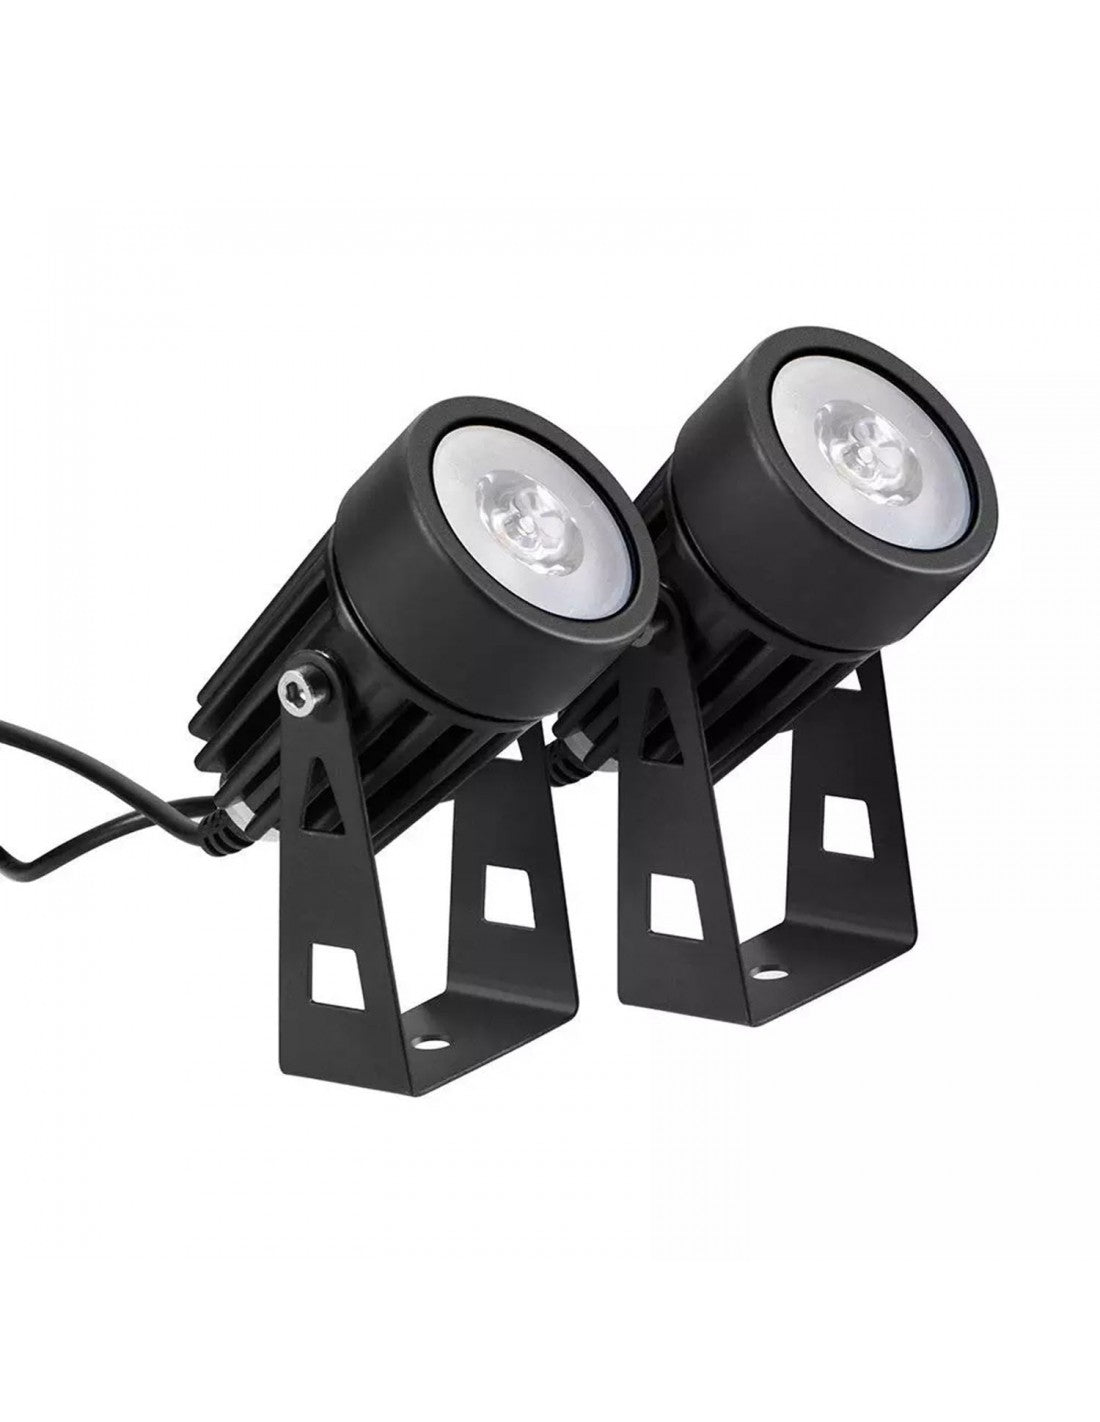 VELAMP - BLACKBIRD: kit of 2 solar-charged aluminum LED spotlights - SL368